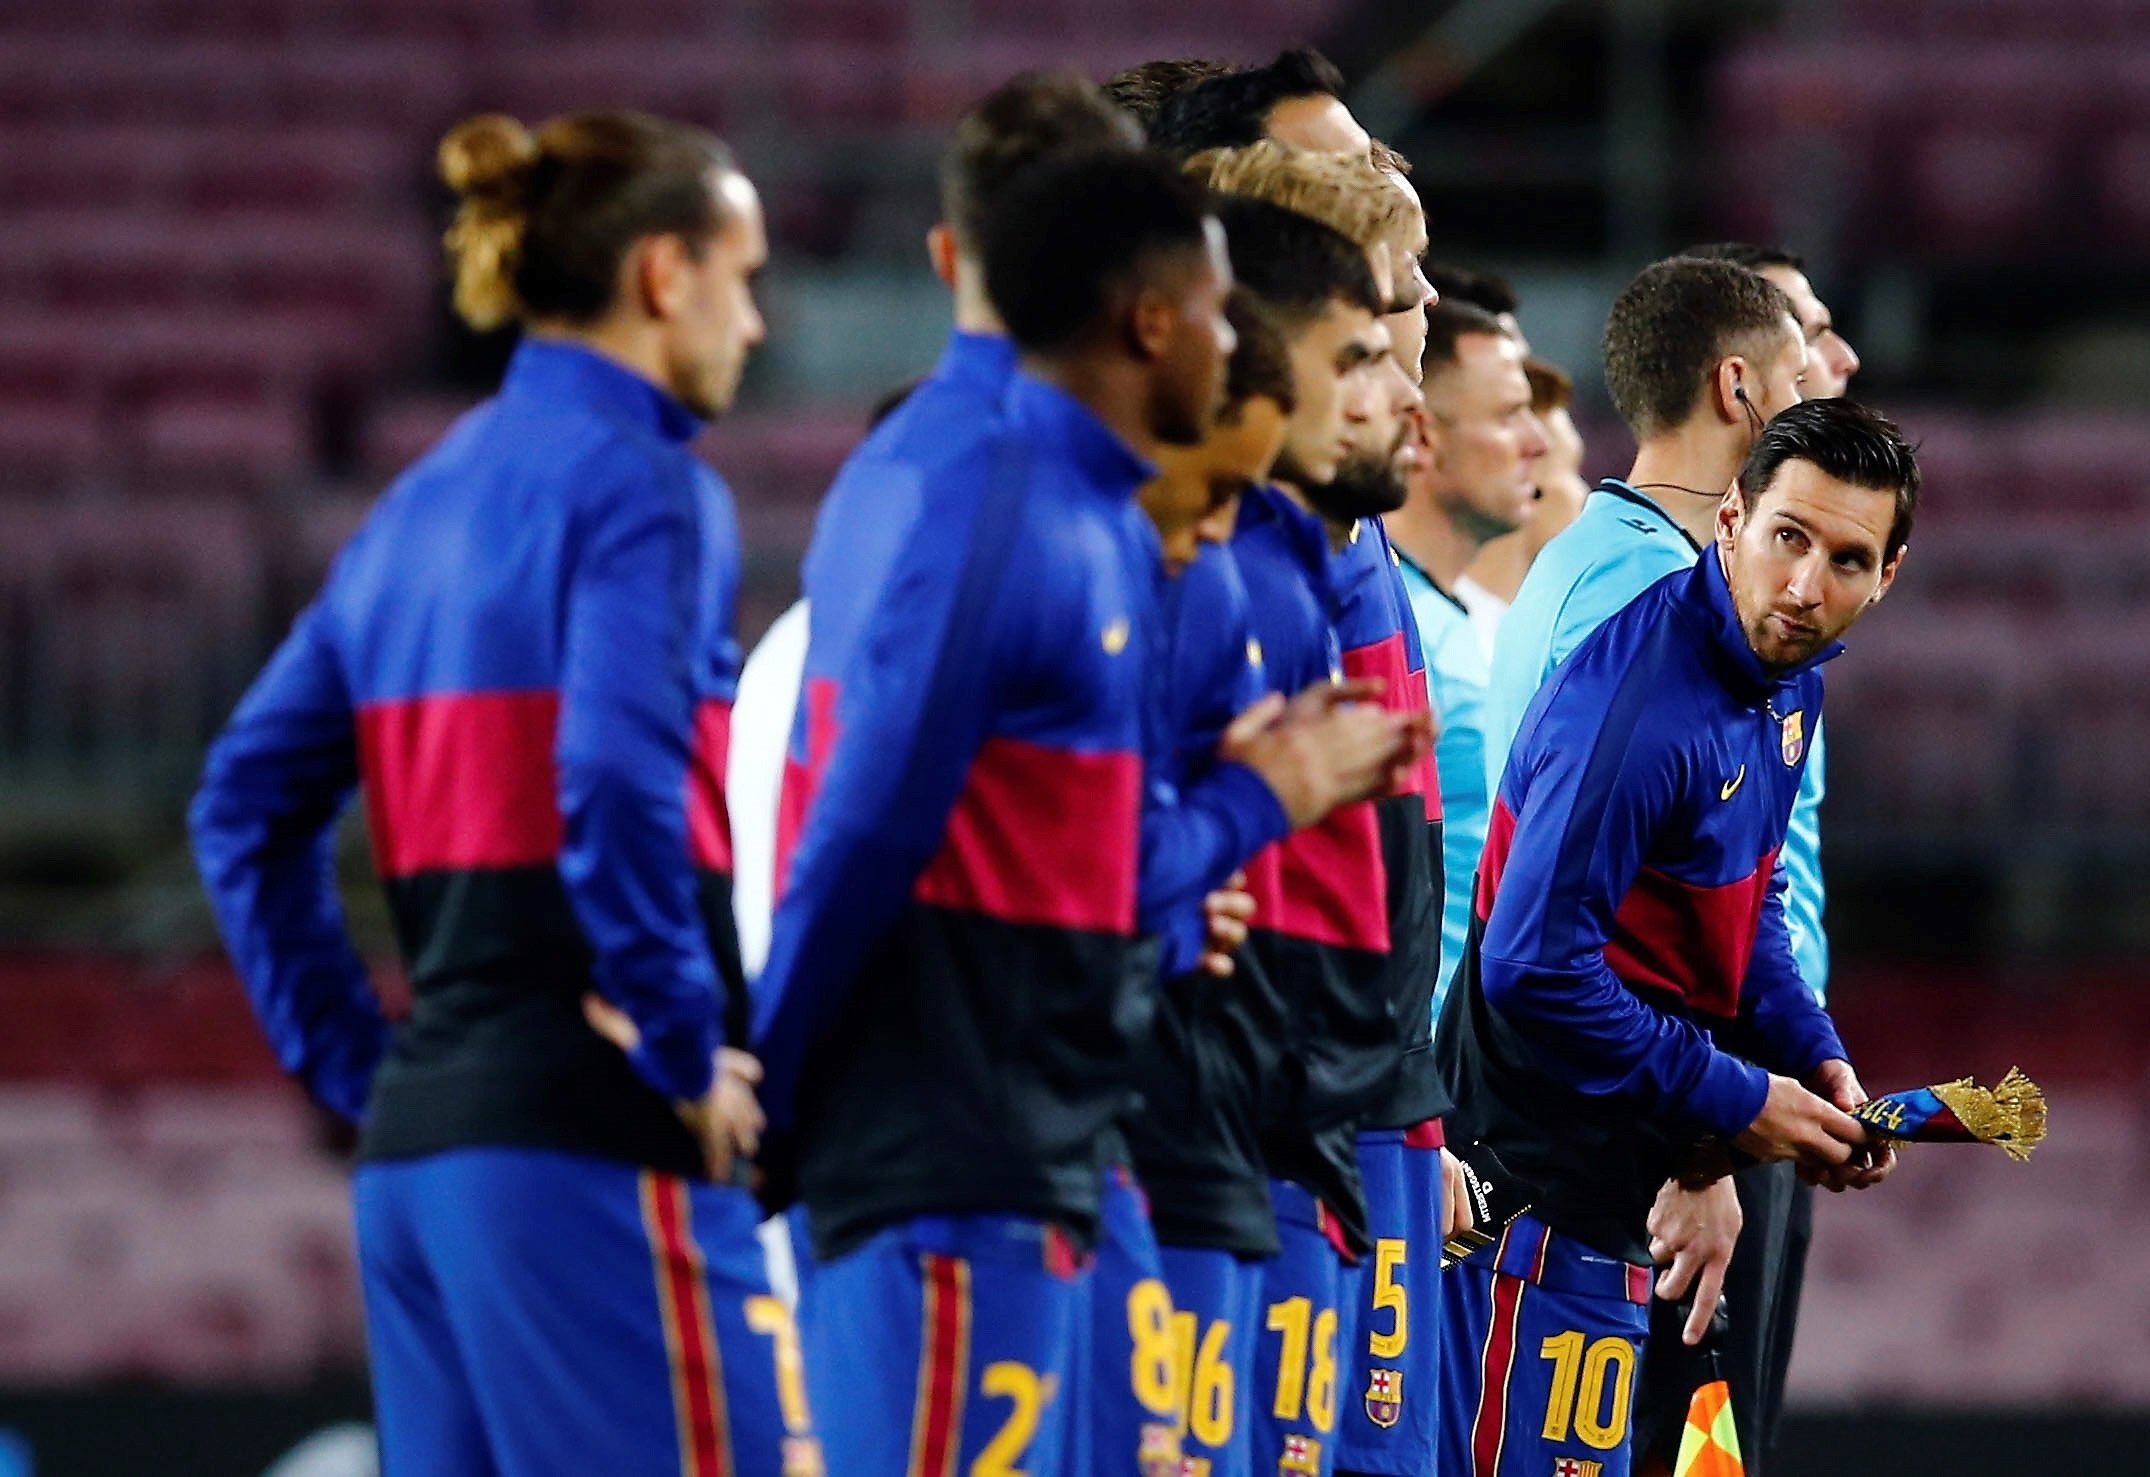 La negociació per la rebaixa salarial entre Barça i jugadors acaba sense acord